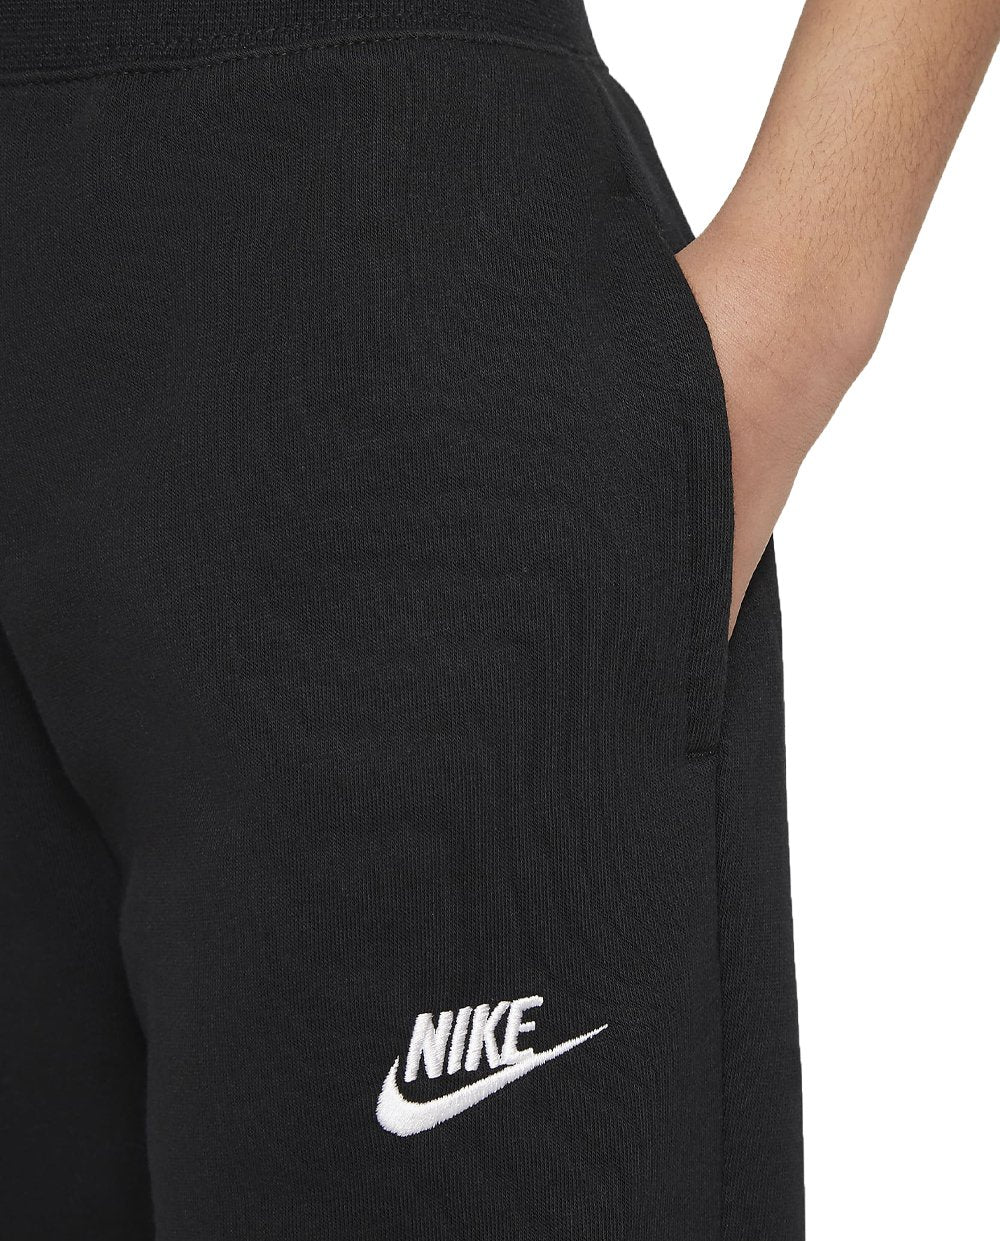 Calças Nike Pretas com Logotipo